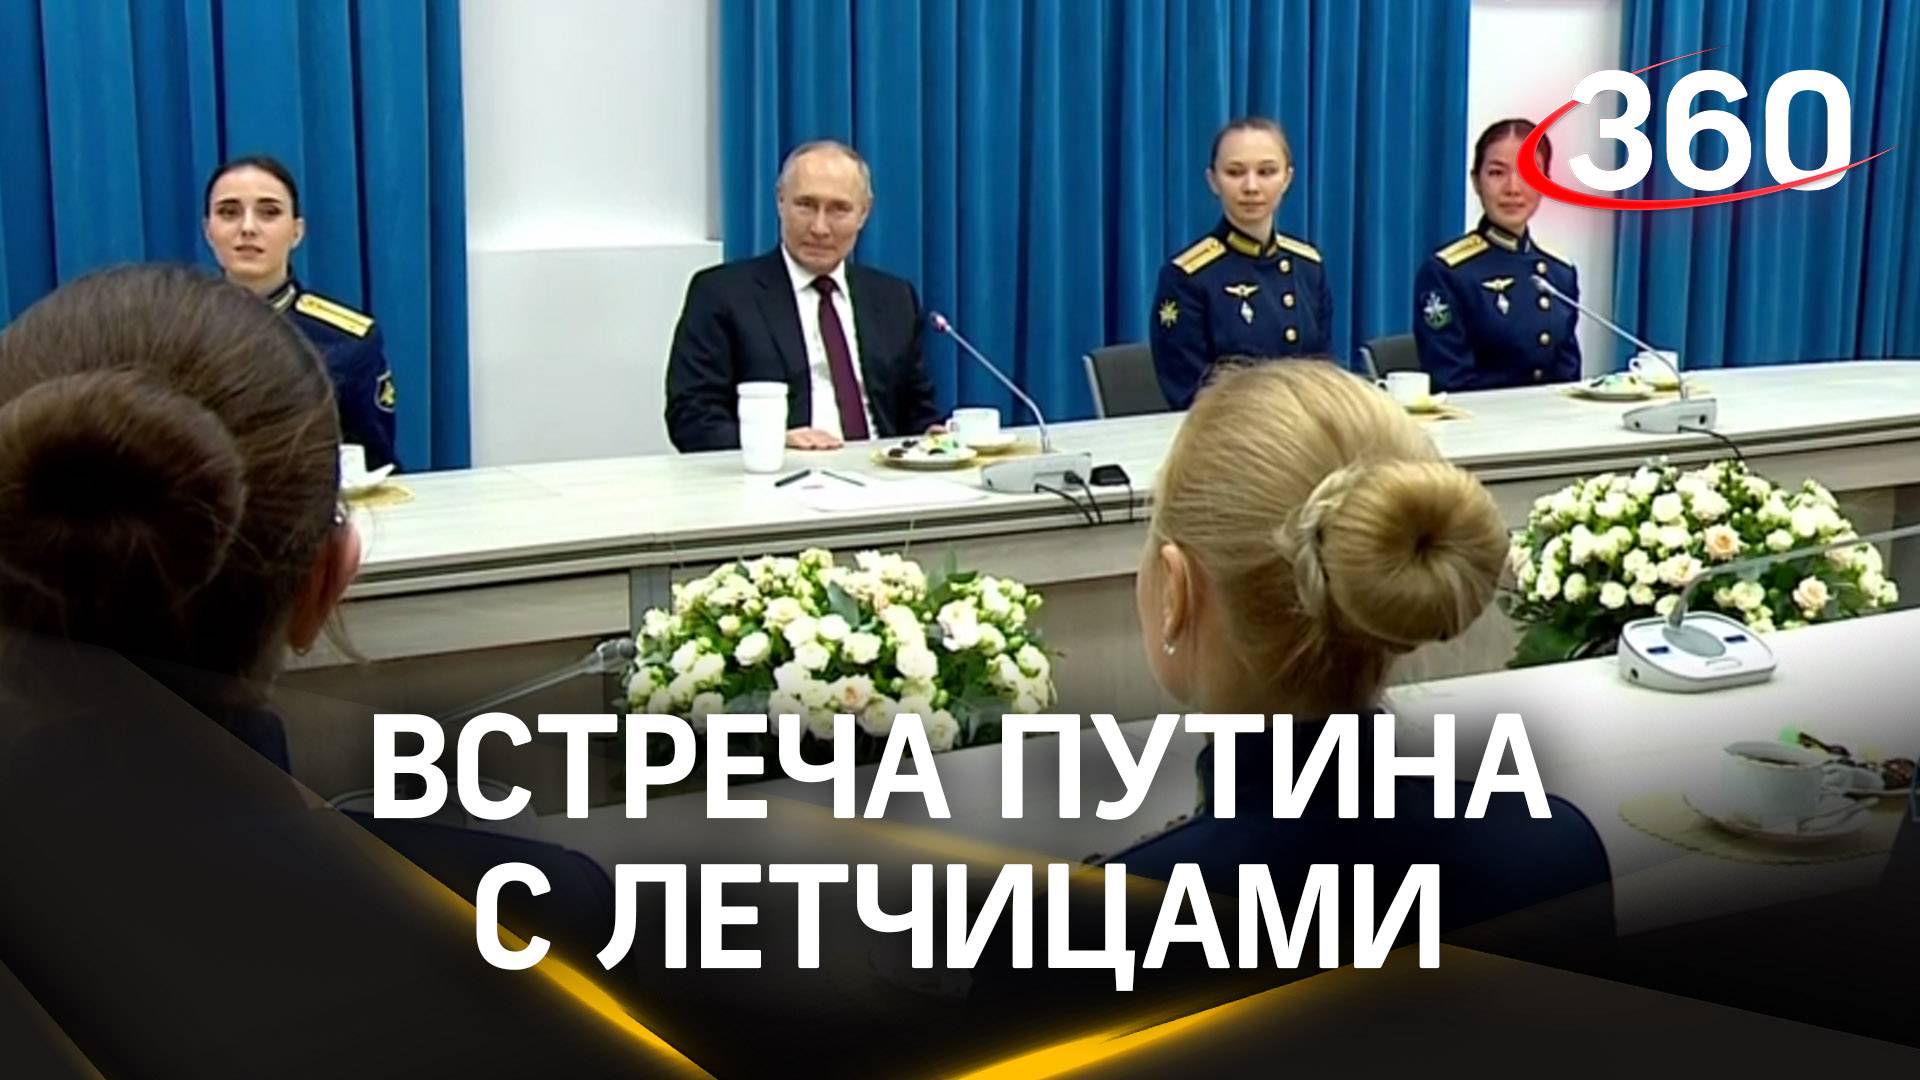 Путин на встрече с летчицами в Краснодаре | Трансляция